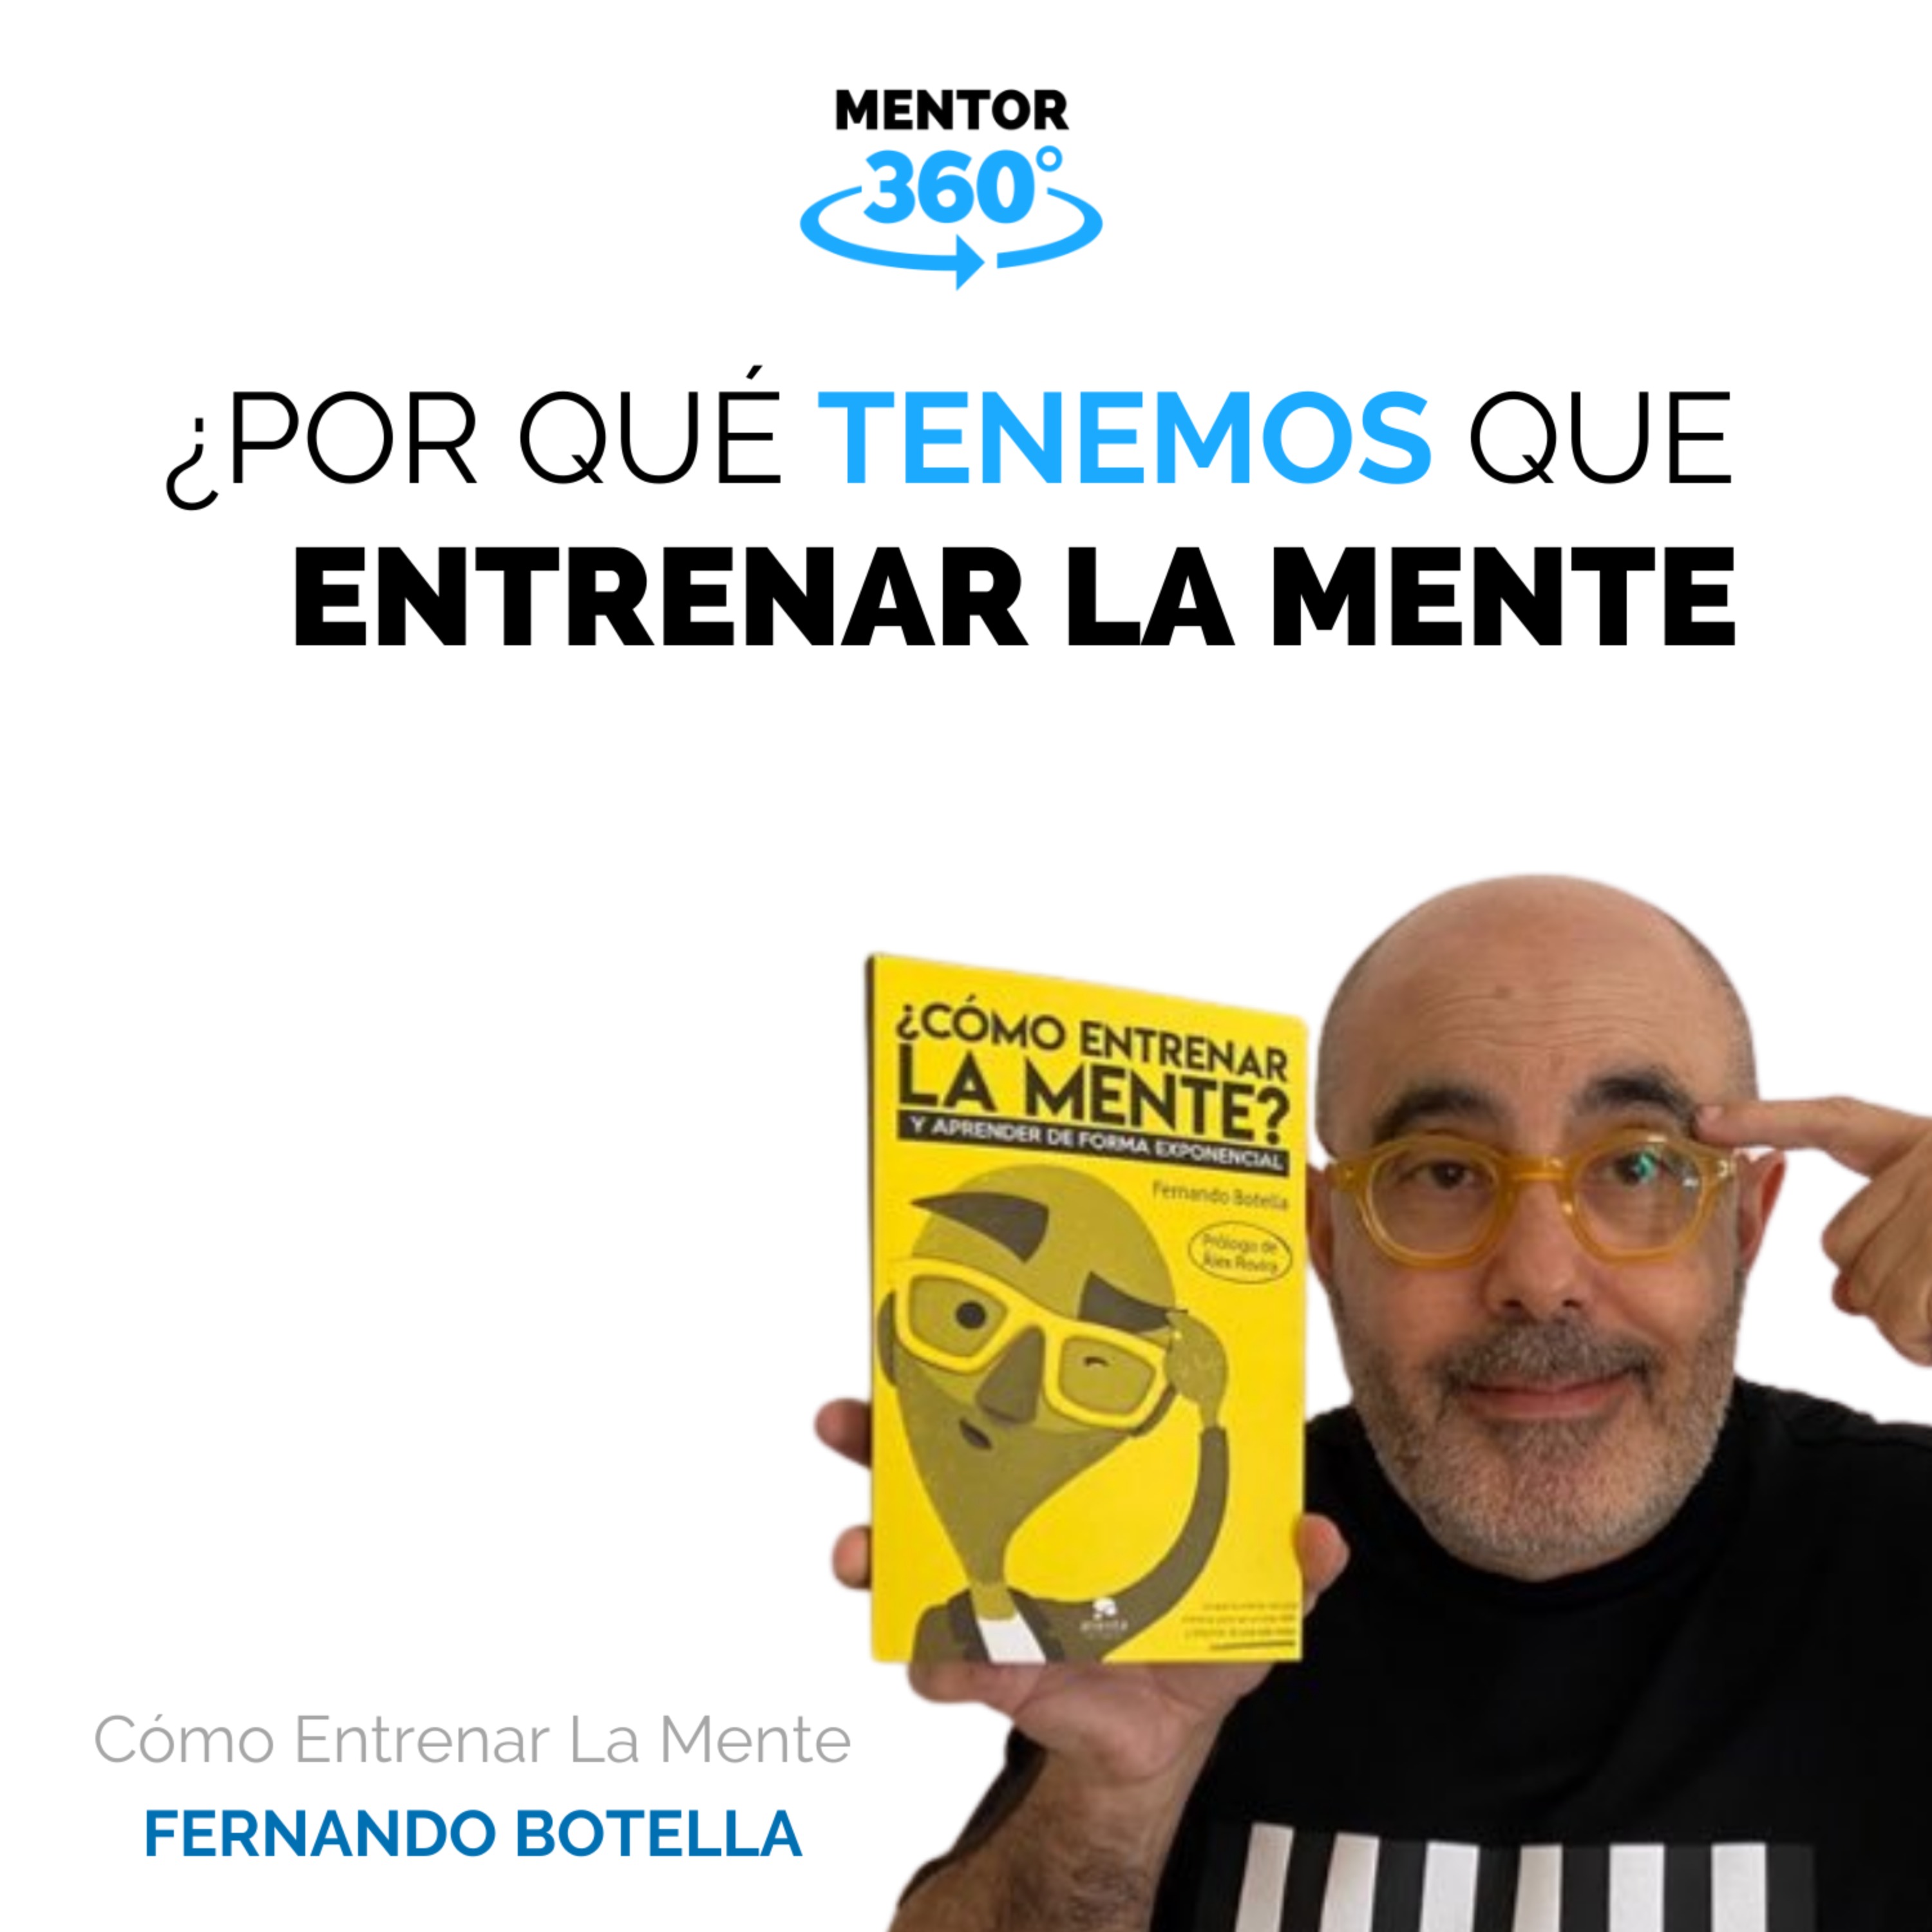 Por Qué Tenemos Que Entrenar La Mente - Cómo Entrenar La Mente - Fernando Botella - MENTOR360